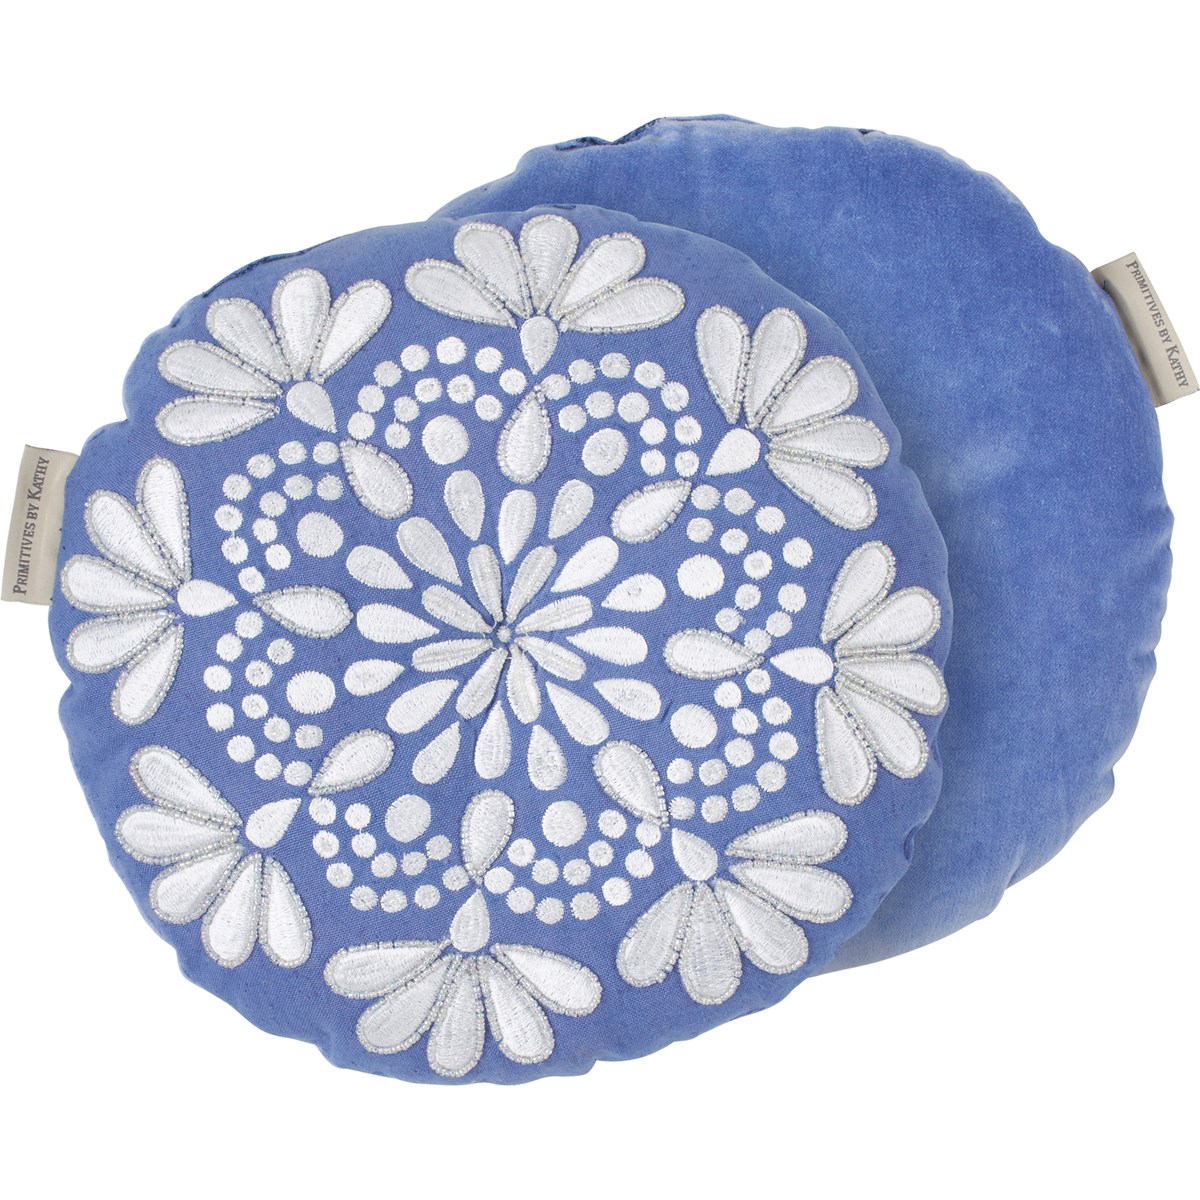 Mandala Shaped Pillow - Cotton, Linen, Velvet, Plastic